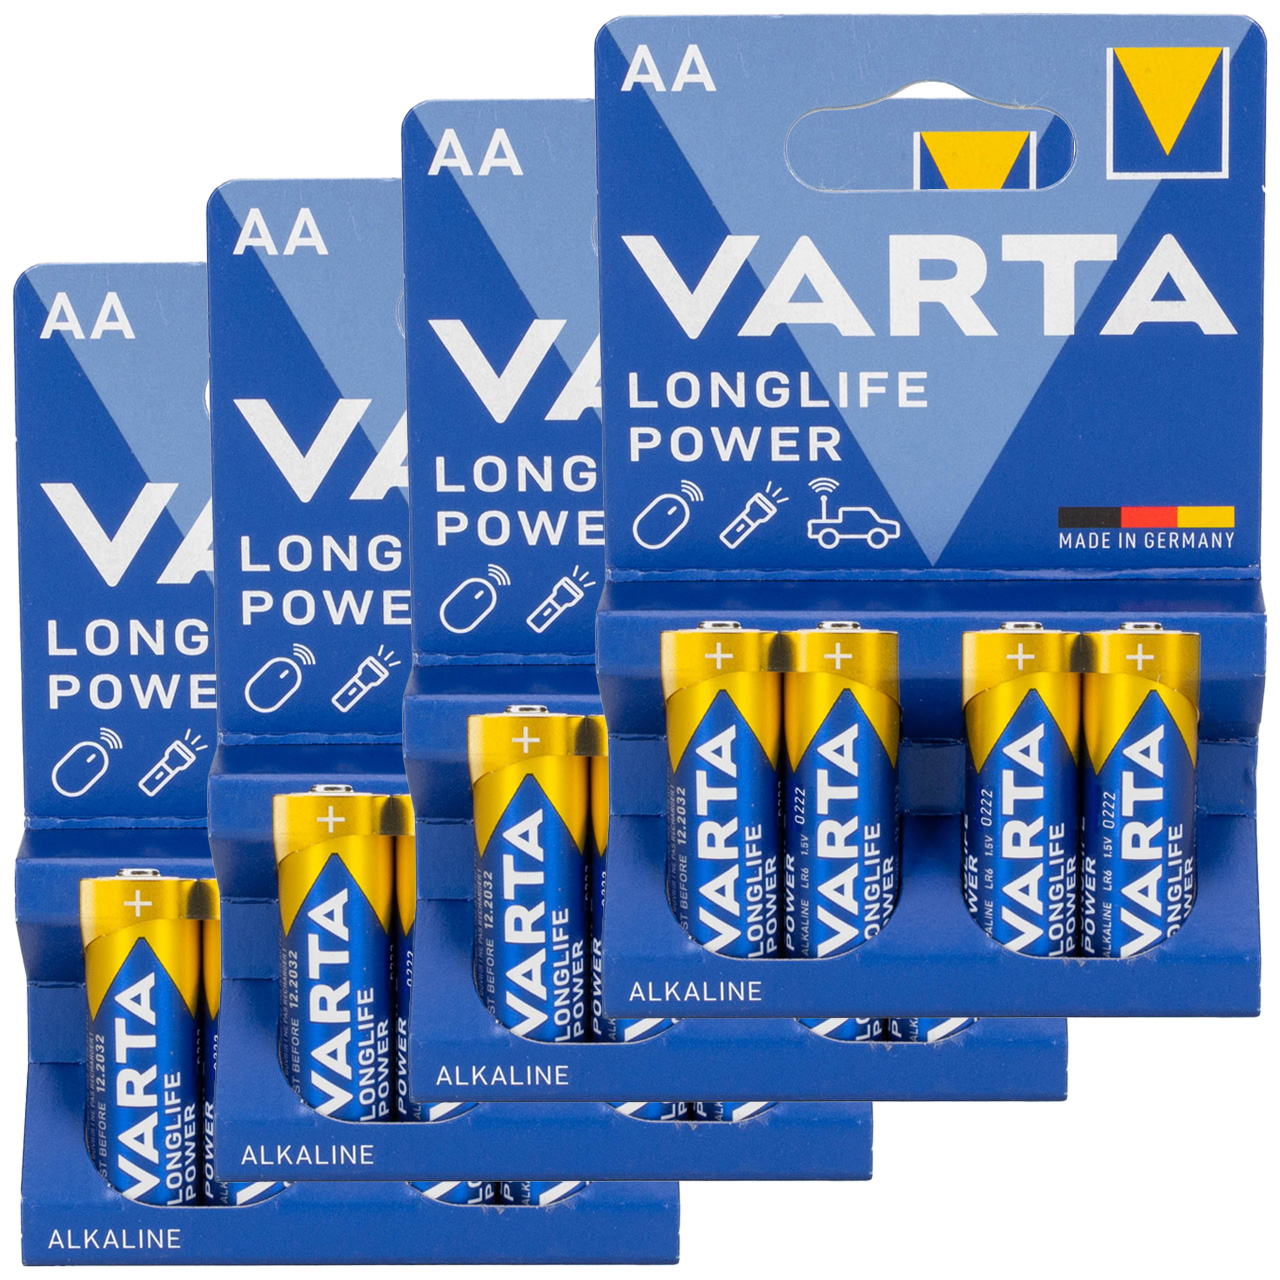 16x VARTA LONGLIFE POWER ALKALINE Batterie AA MIGNON 4906 LR6 MN1500 1,5V